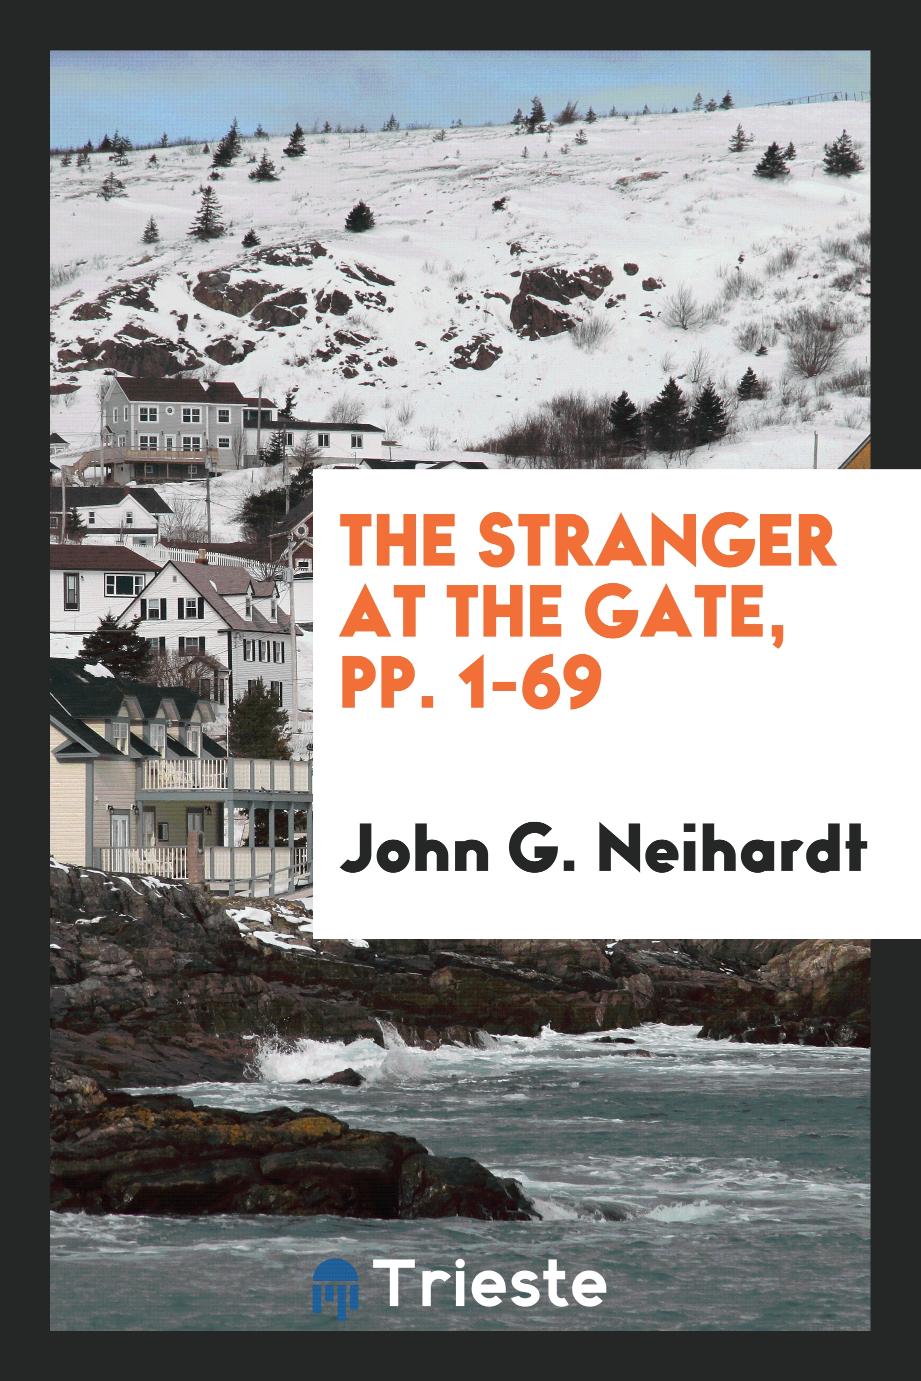 John G. Neihardt - The Stranger at the Gate, pp. 1-69